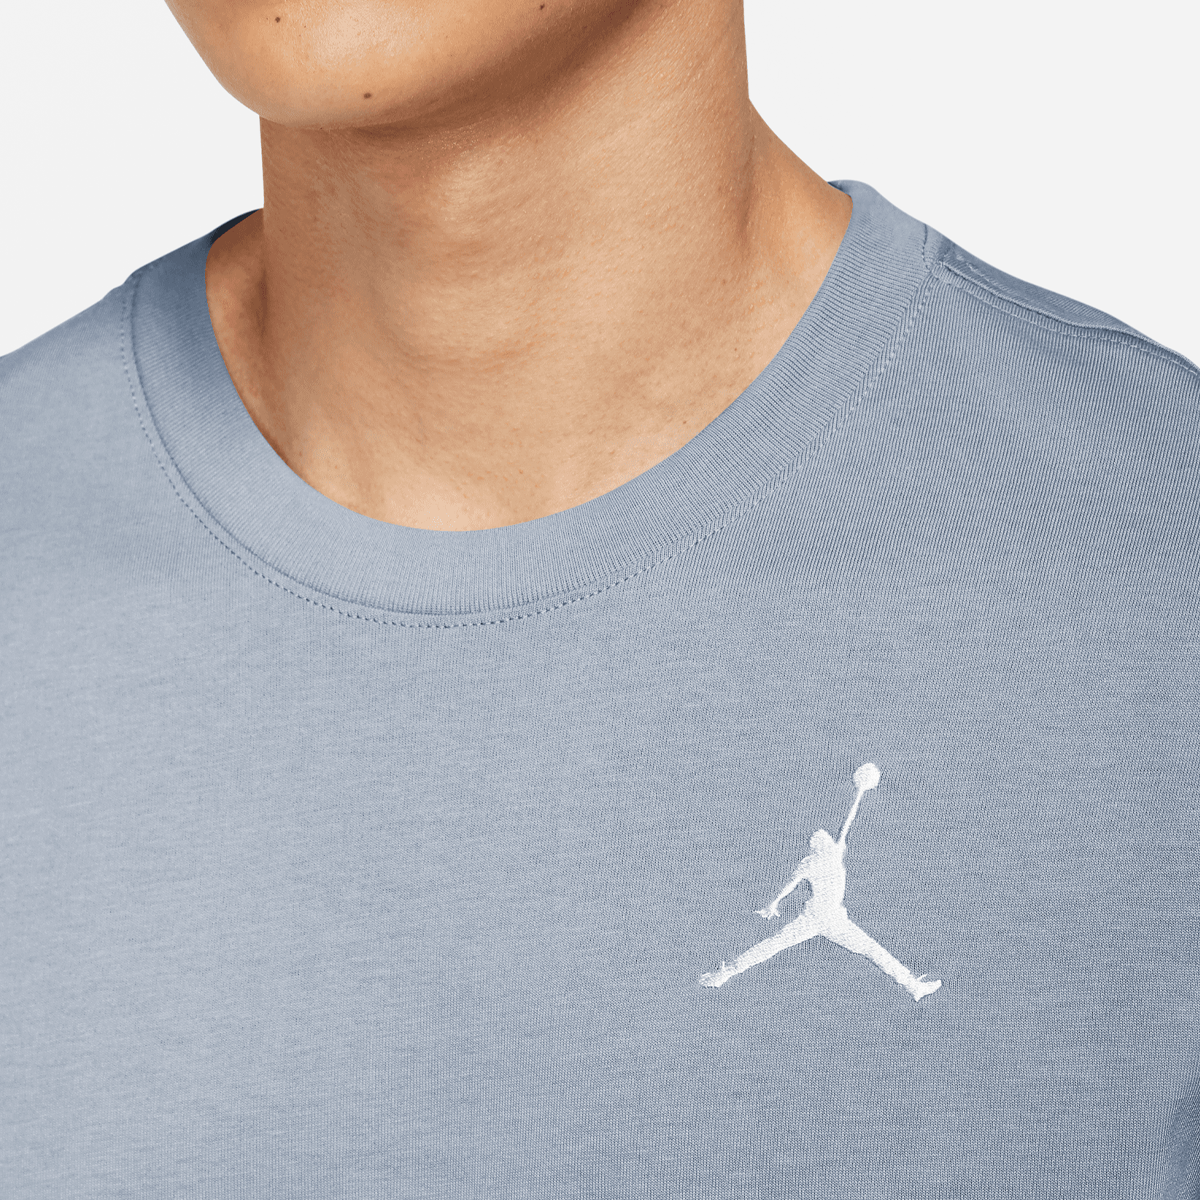 Jordan Jumpman Shortsleeve Crew Shirt T-shirts Heren blue grey white maat: S beschikbare maaten:S M L XL